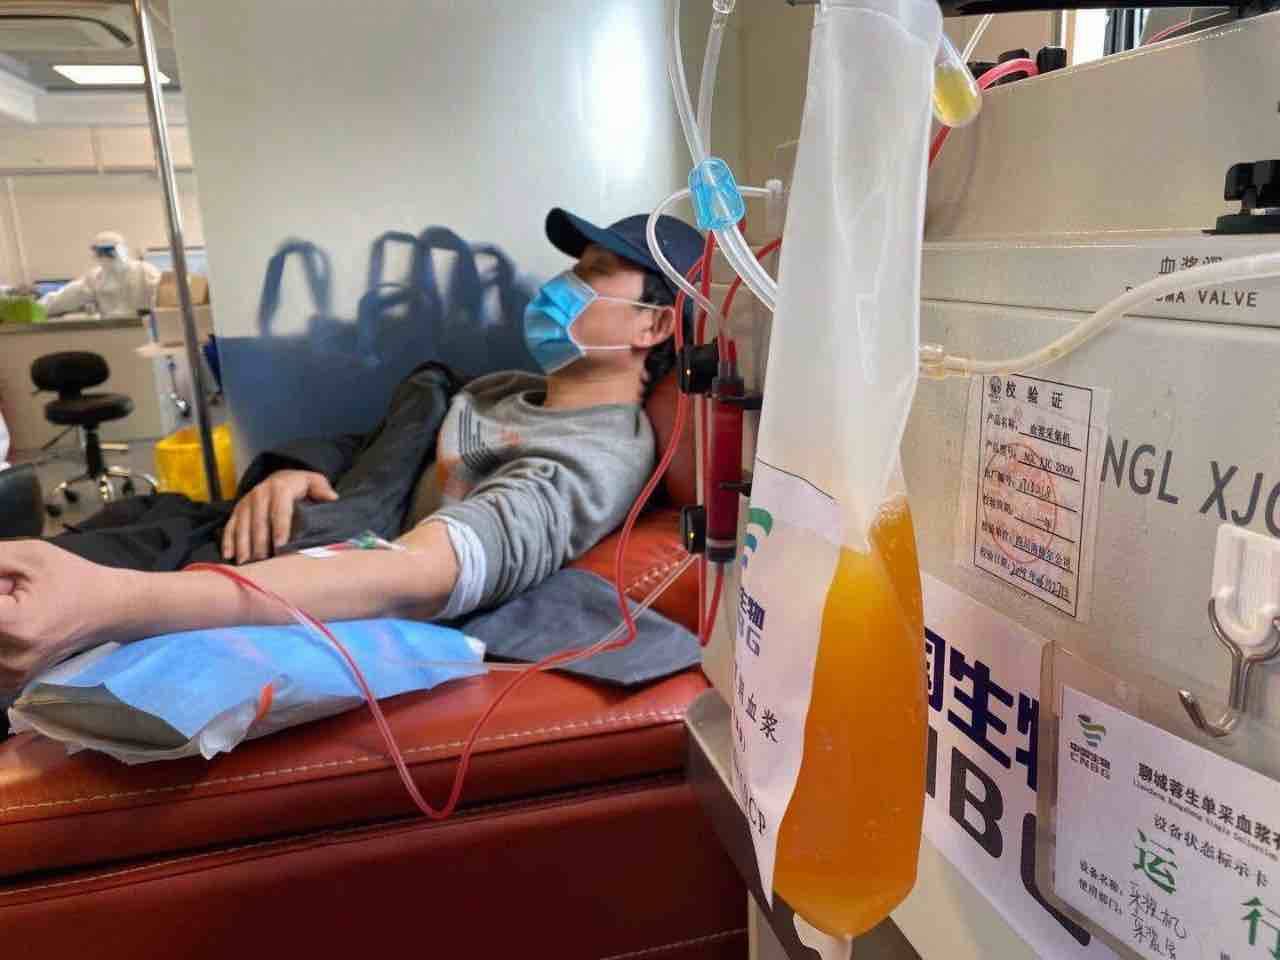 淄博4例新冠肺炎康复者捐献血浆 其中一例第二次捐献